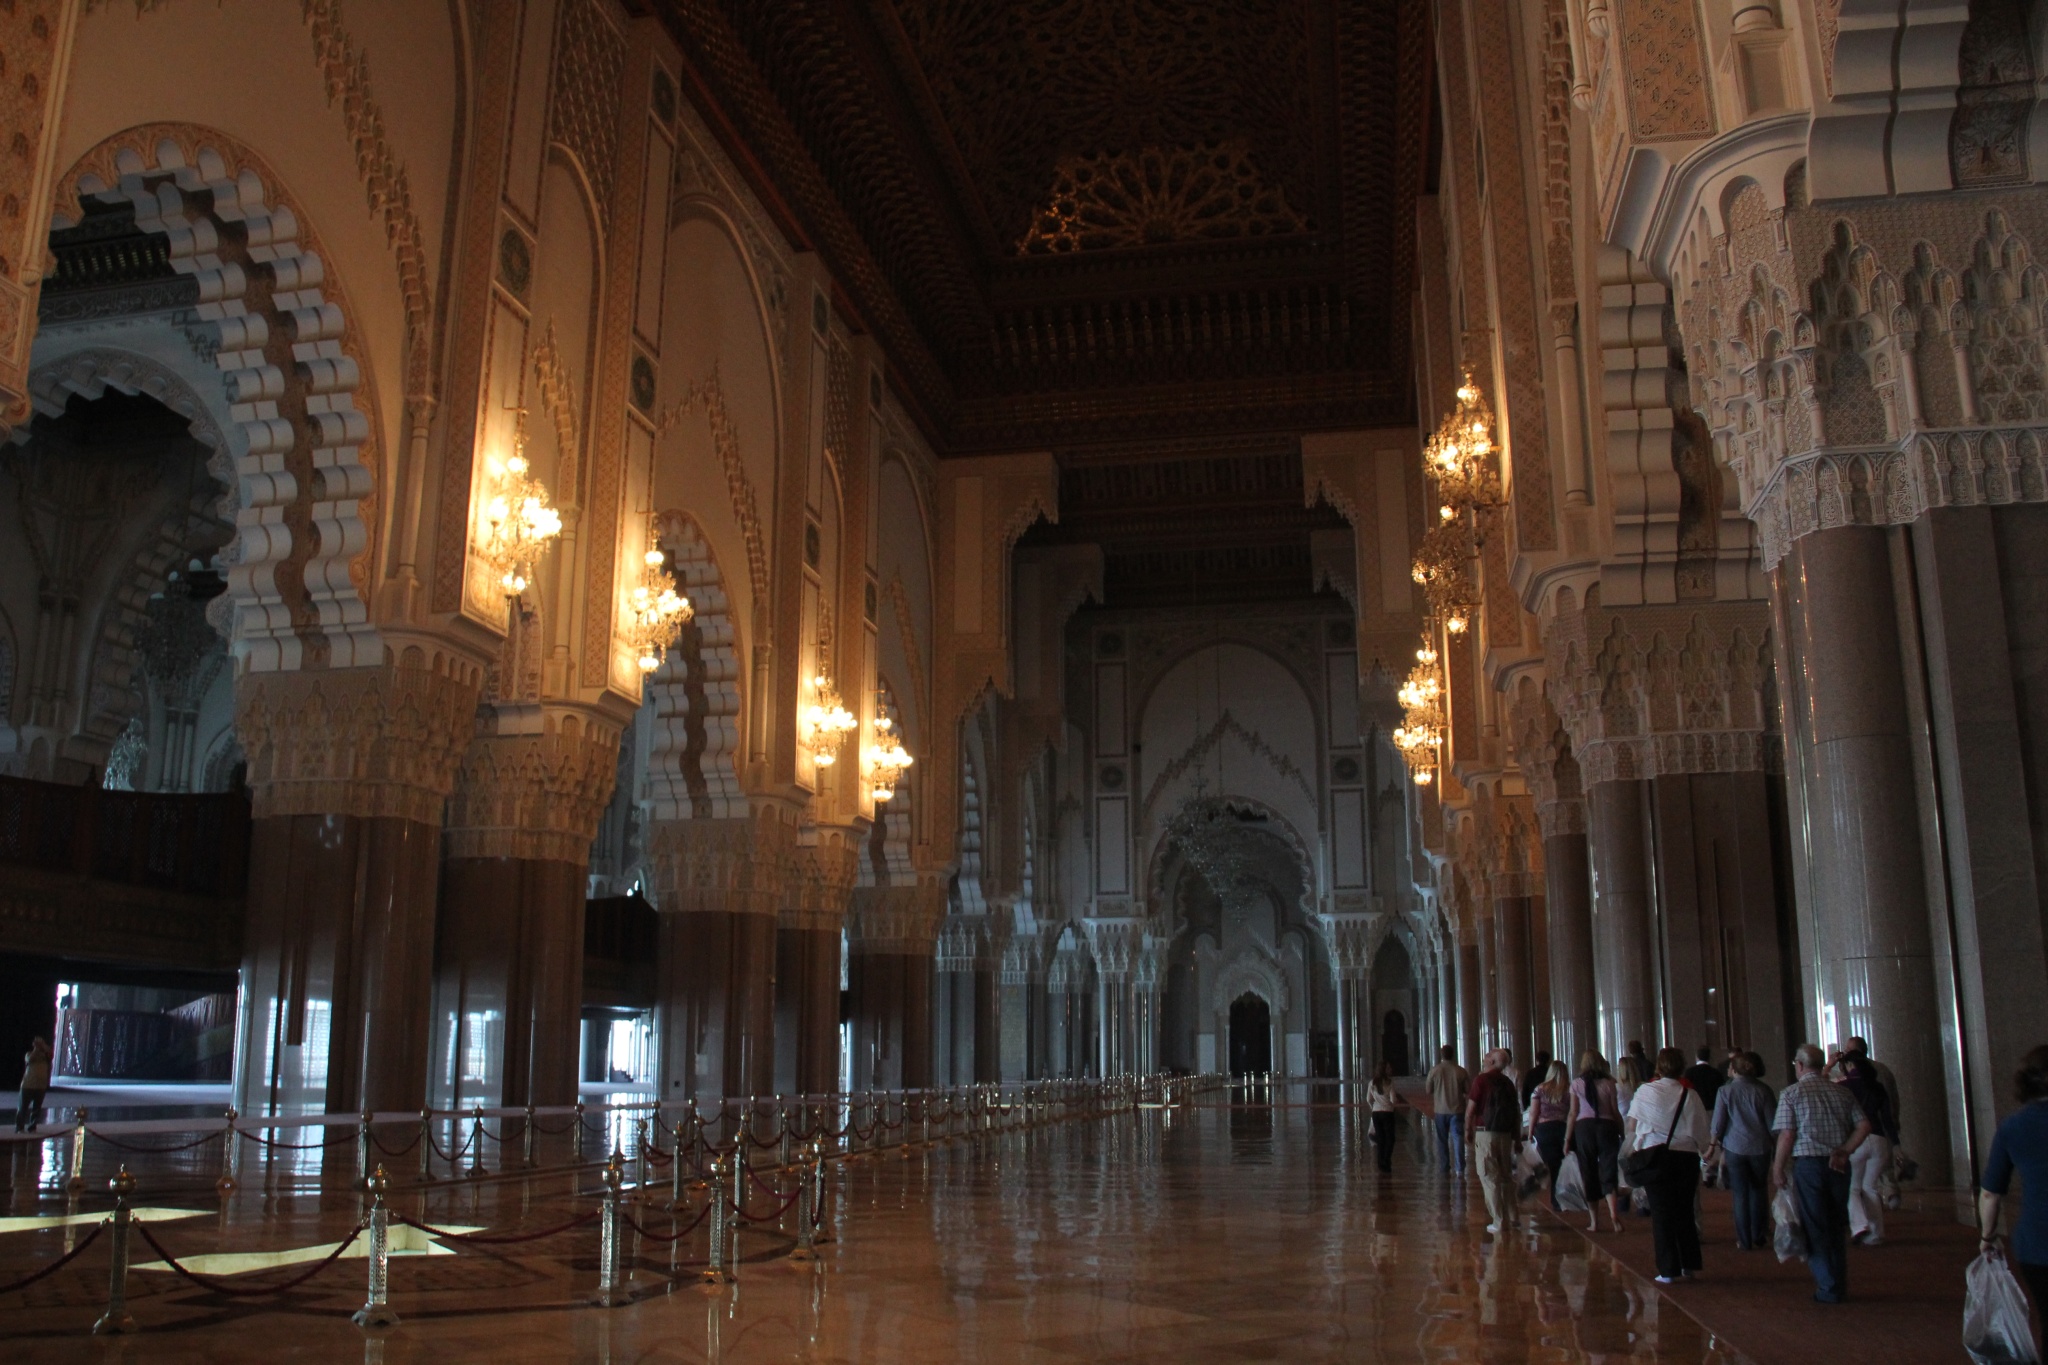 King Hassan II Mosque interior